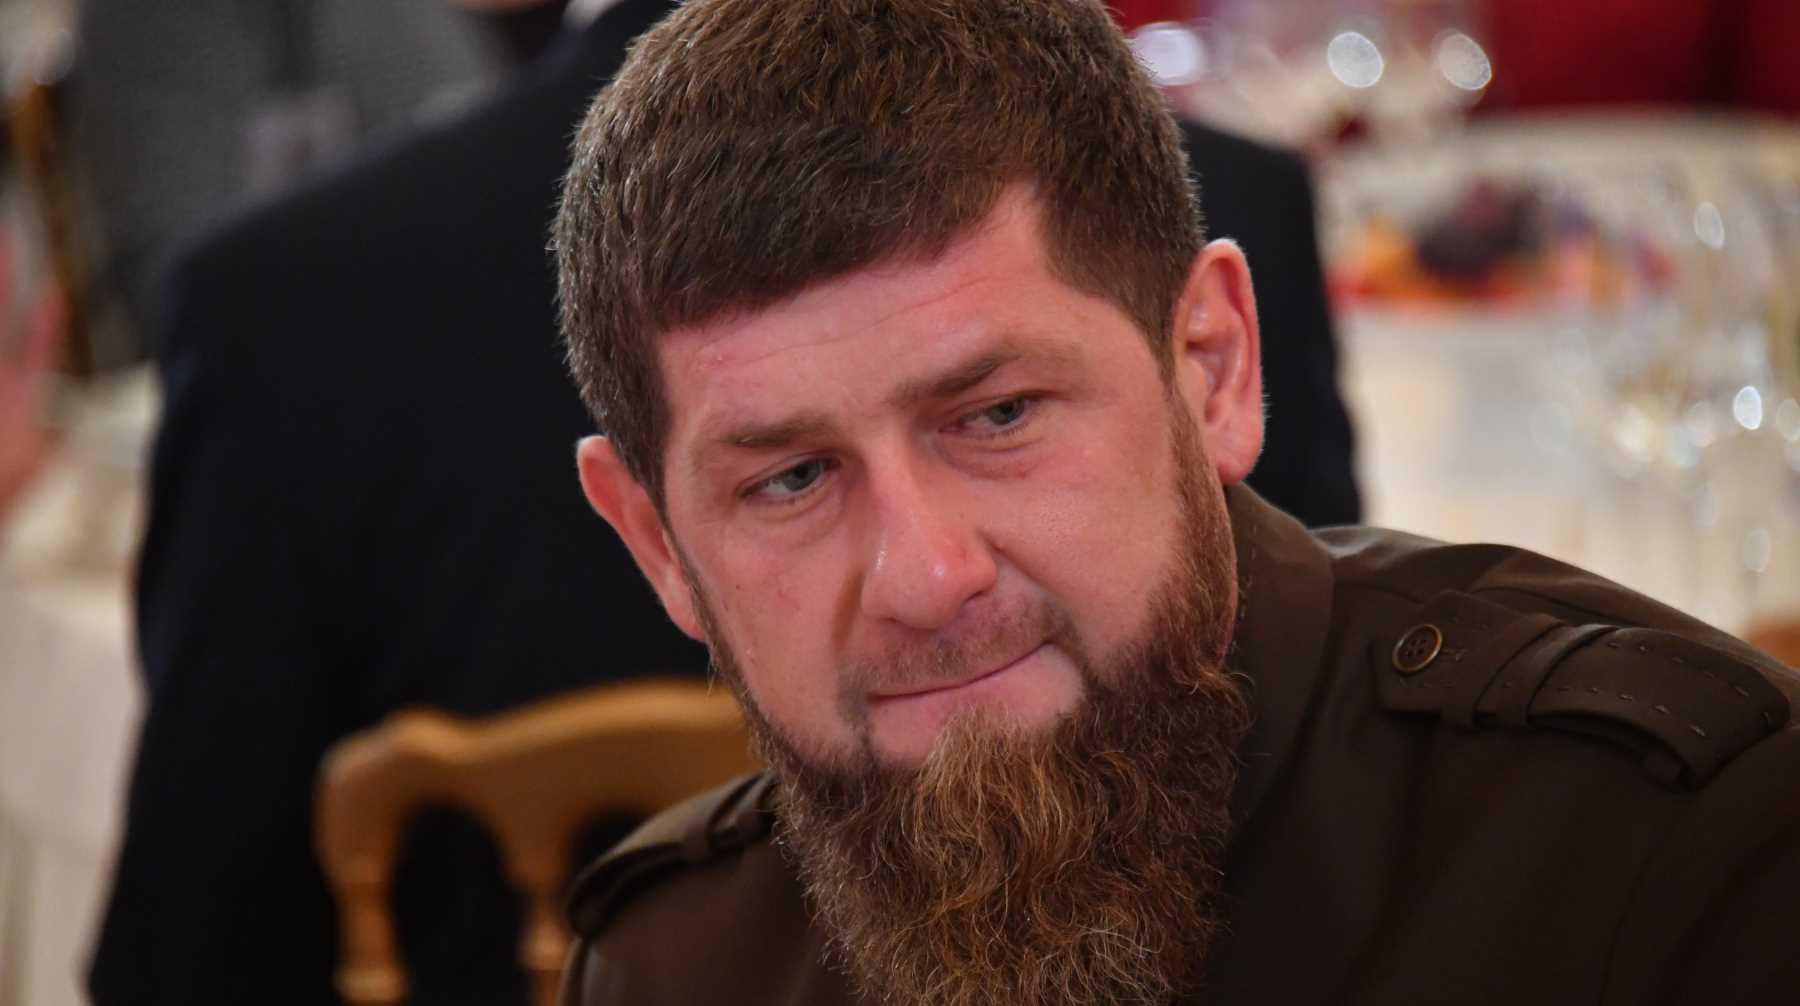 Глава Чечни попросил у властей США чемодан с наличными за информацию о местоположении предпринимателя Фото: © Global Look Press / Комсомольская правда